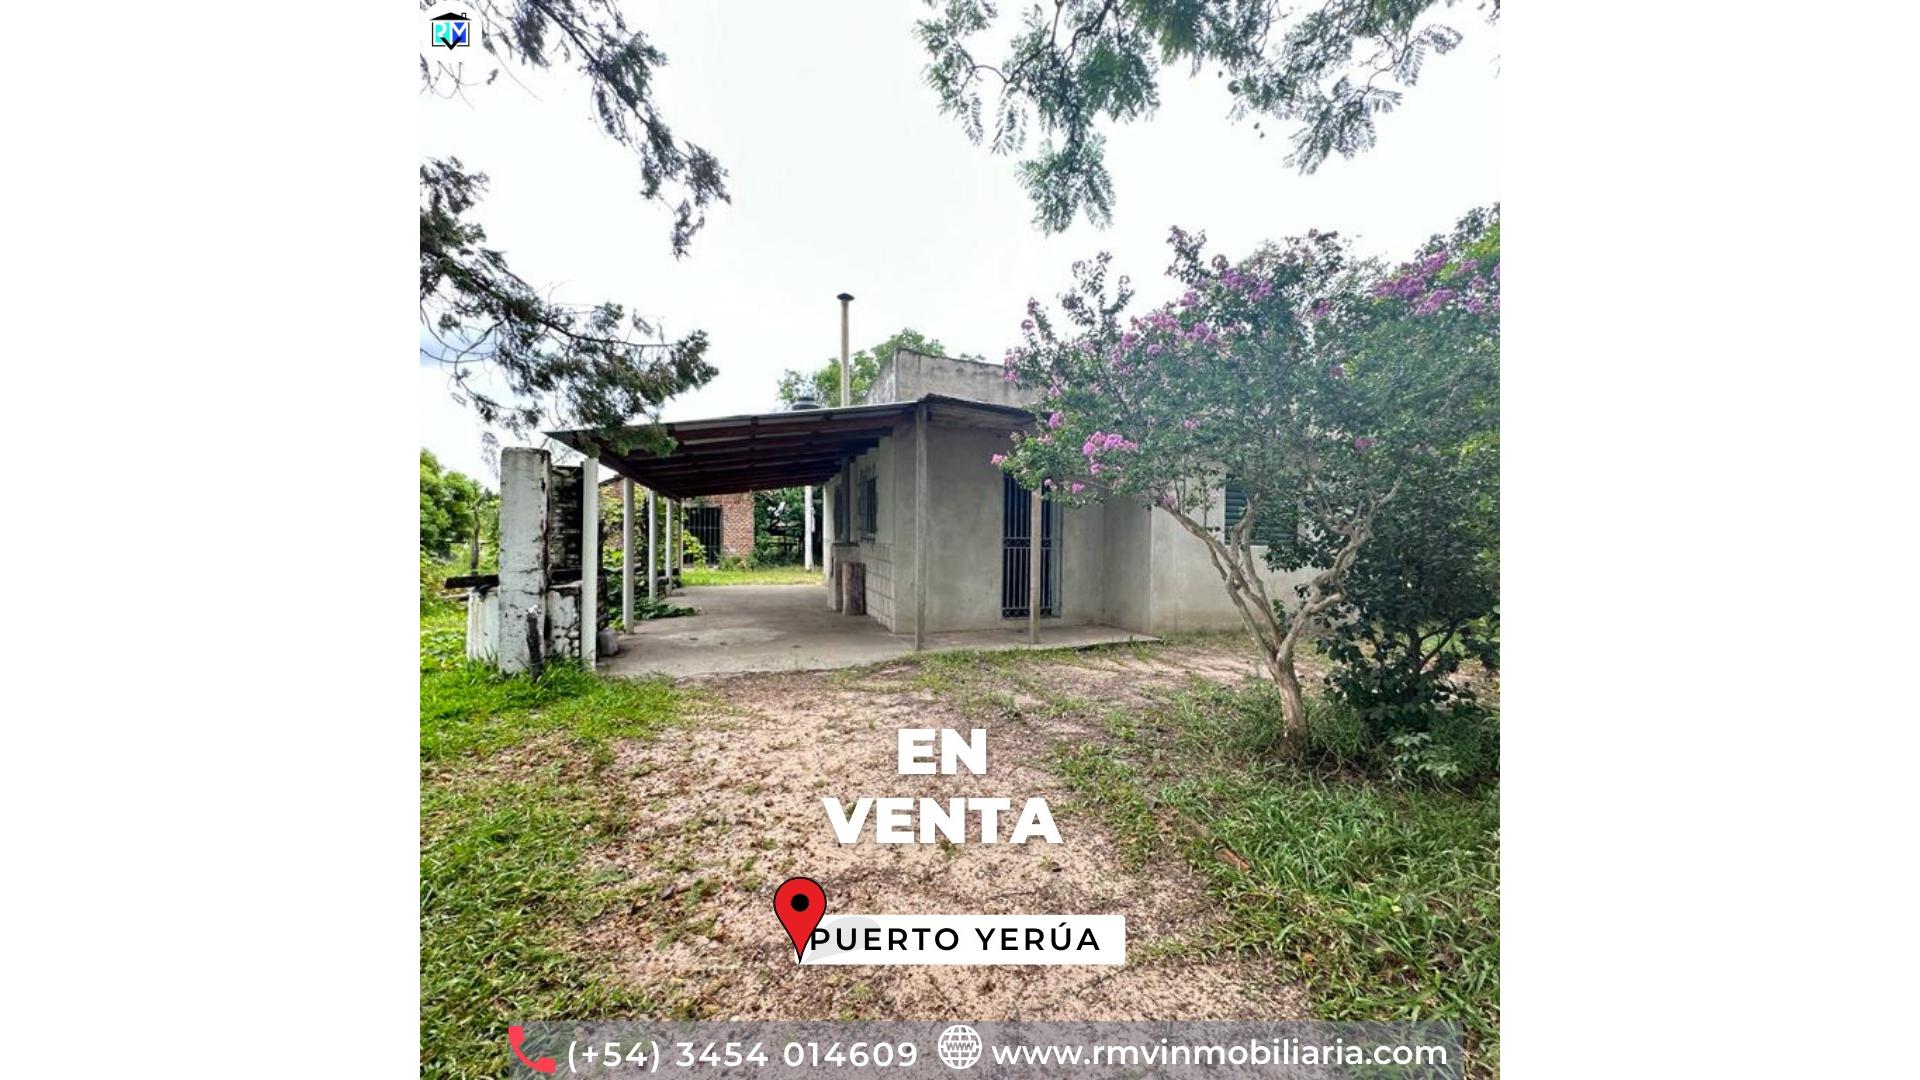 #4898398 | Venta | Casa | Puerto Yerua (RMV Negocios Inmobiliarios)